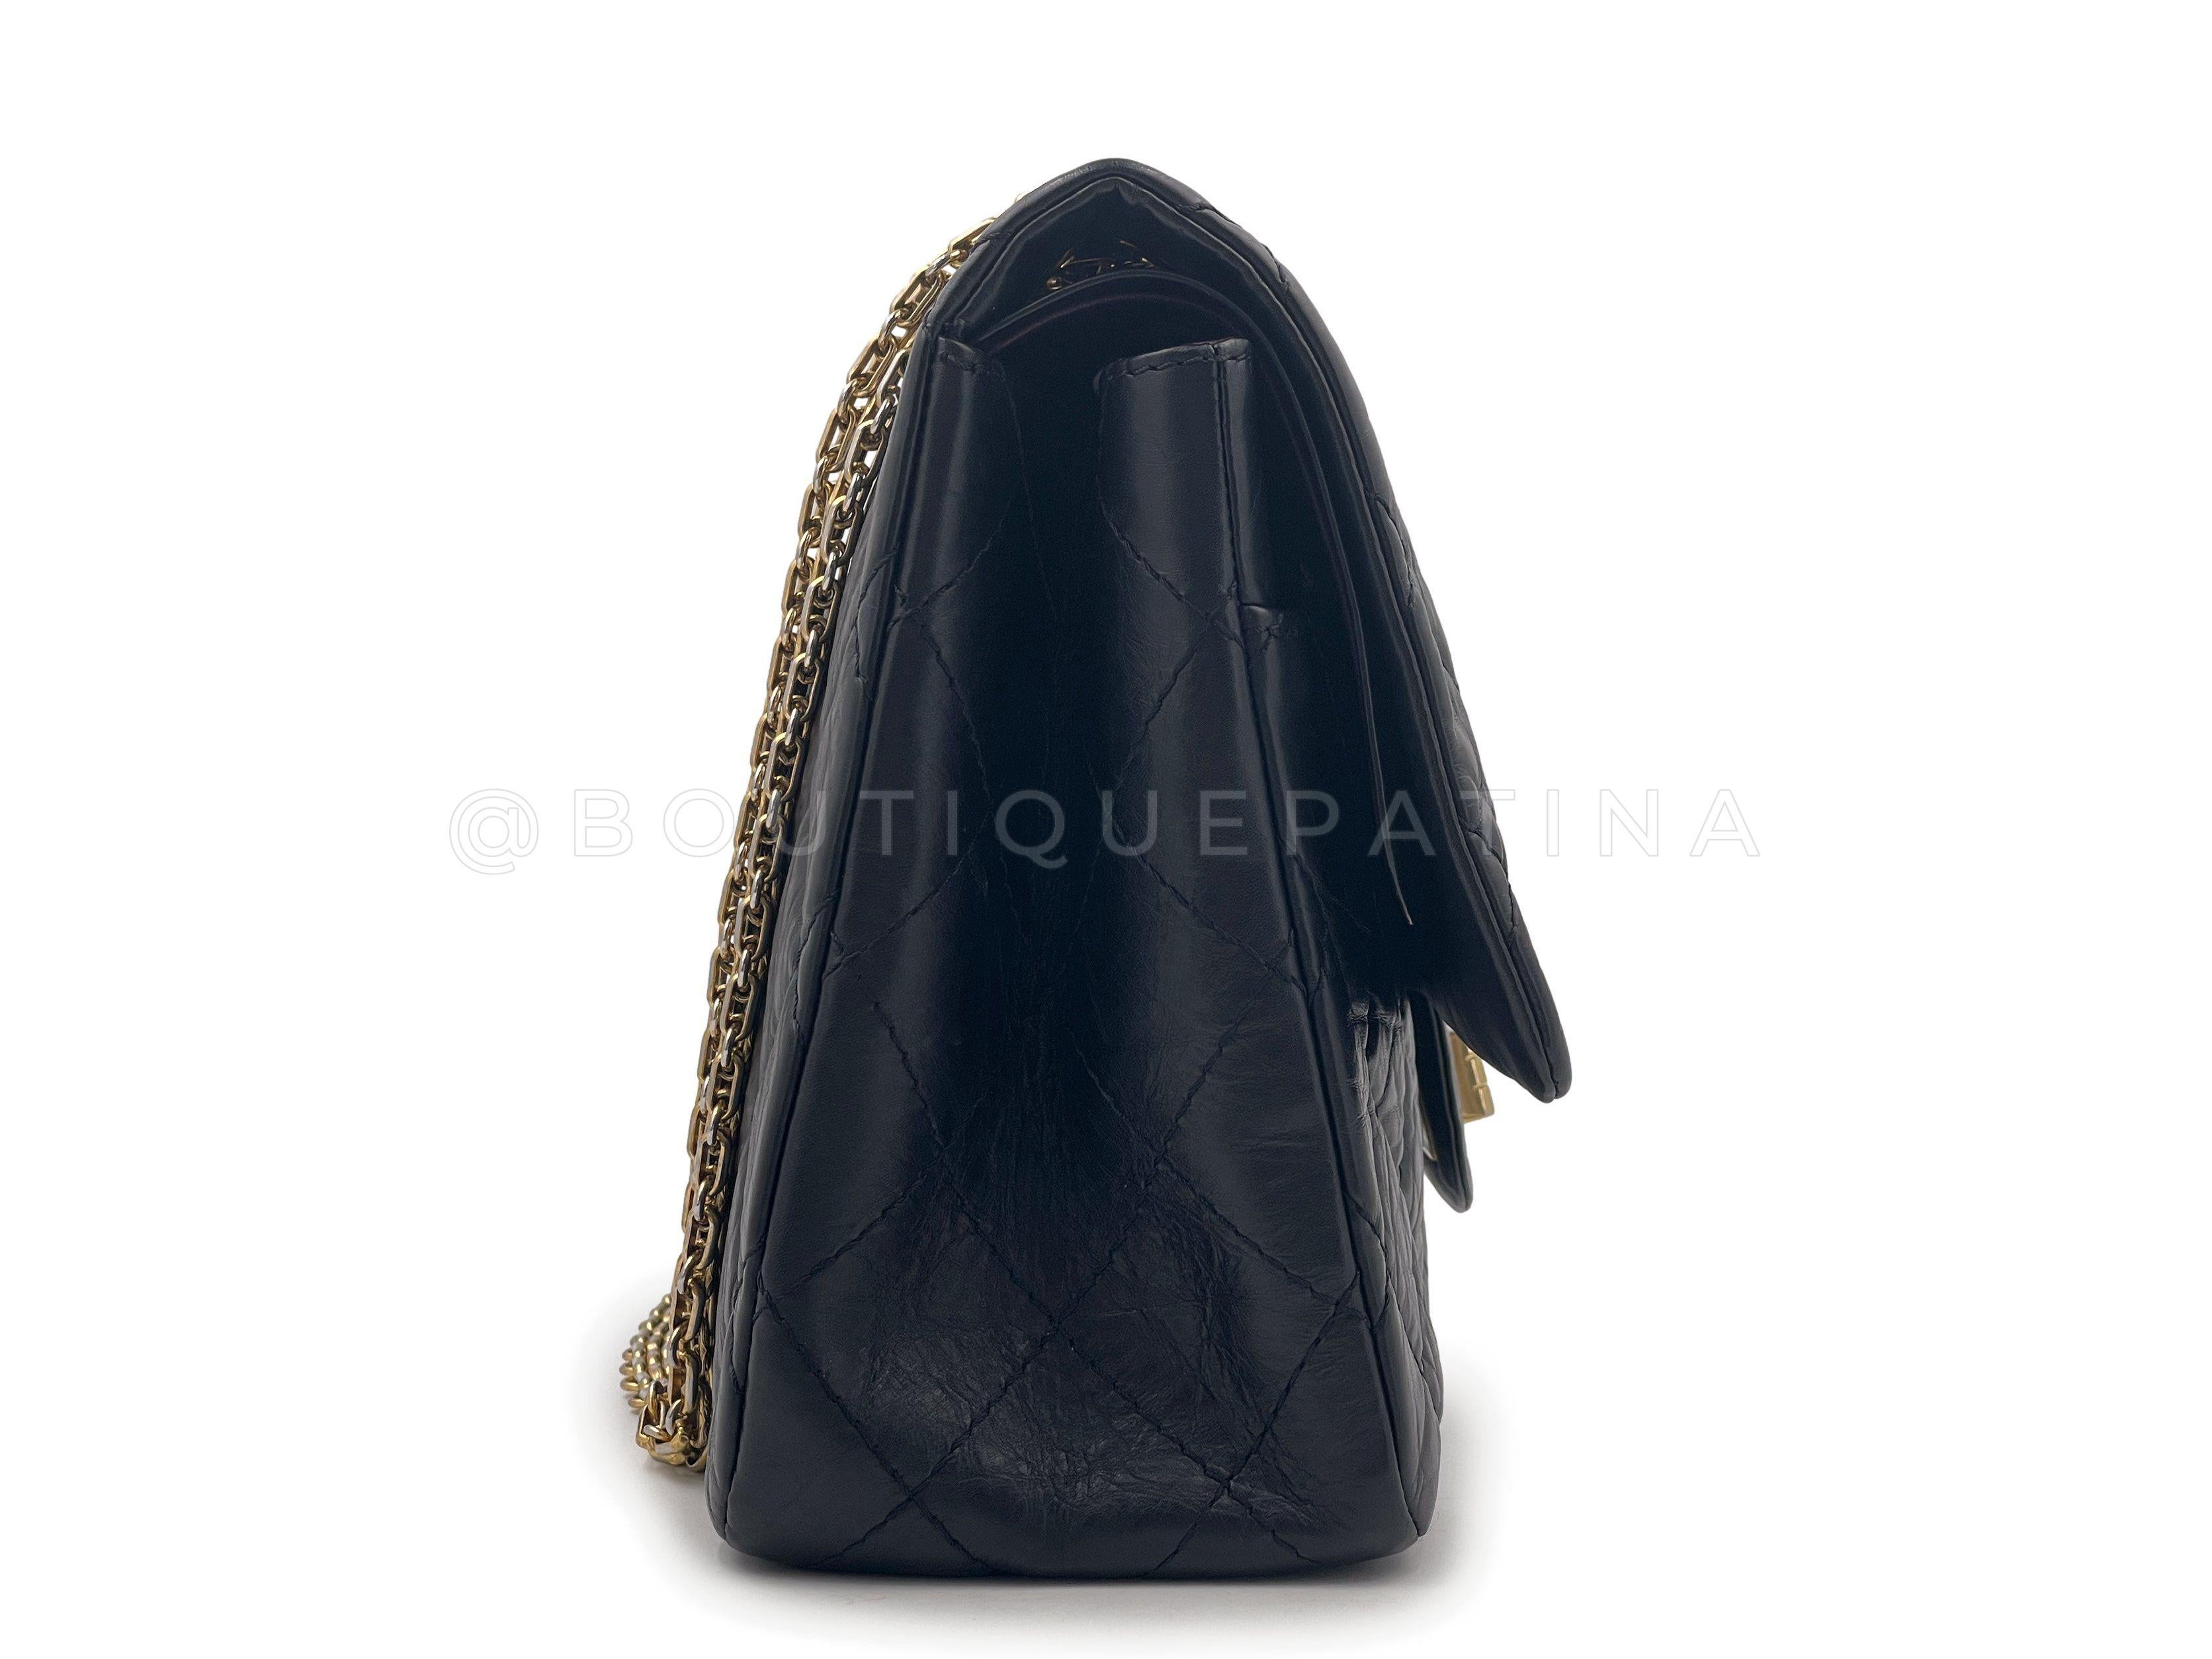 Chanel - Grand sac à rabat 227 2.55 en cuir de veau vieilli noir, réédition GHW 65332 Pour femmes en vente